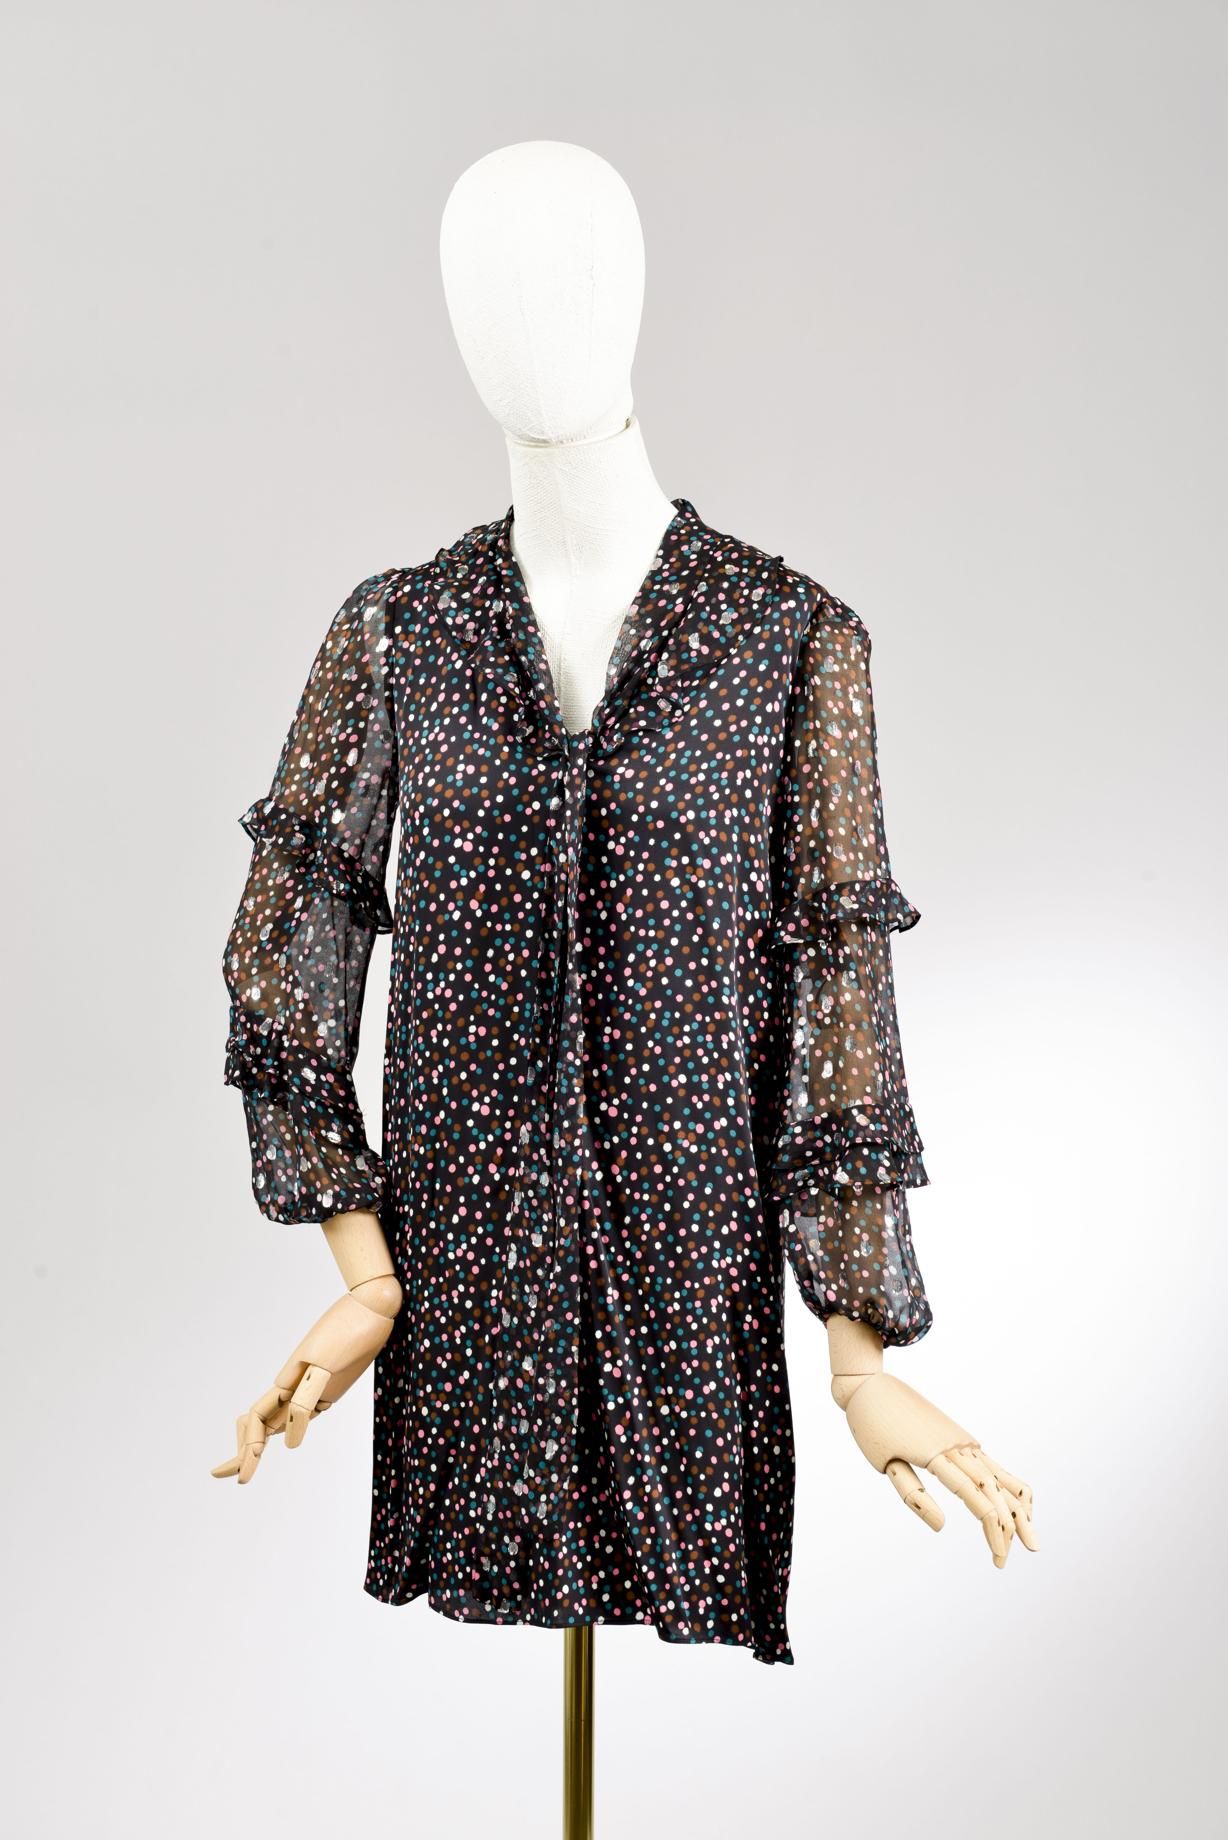 Null *尺寸XS DVF - Diane Von Fürstenberg

套装包括。

-丝质和丝质雪纺连衣裙，型号为 "DVF Amalie"，上面绣有&hellip;